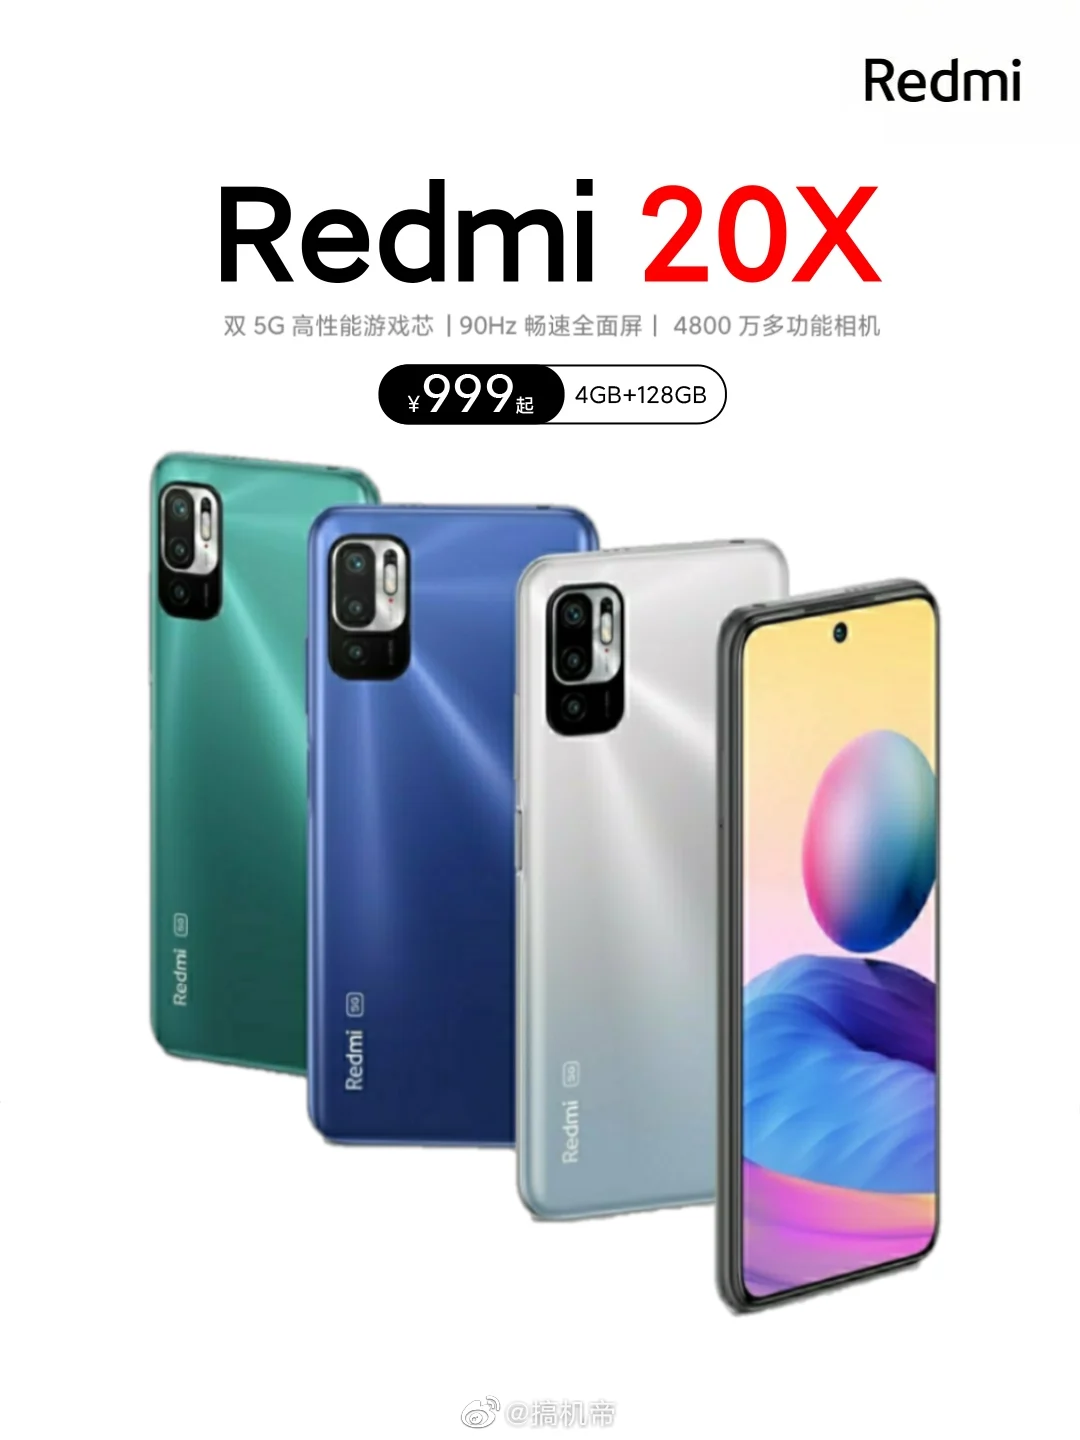 Gyönyörű színekben érkezik az olcsó Redmi 20X